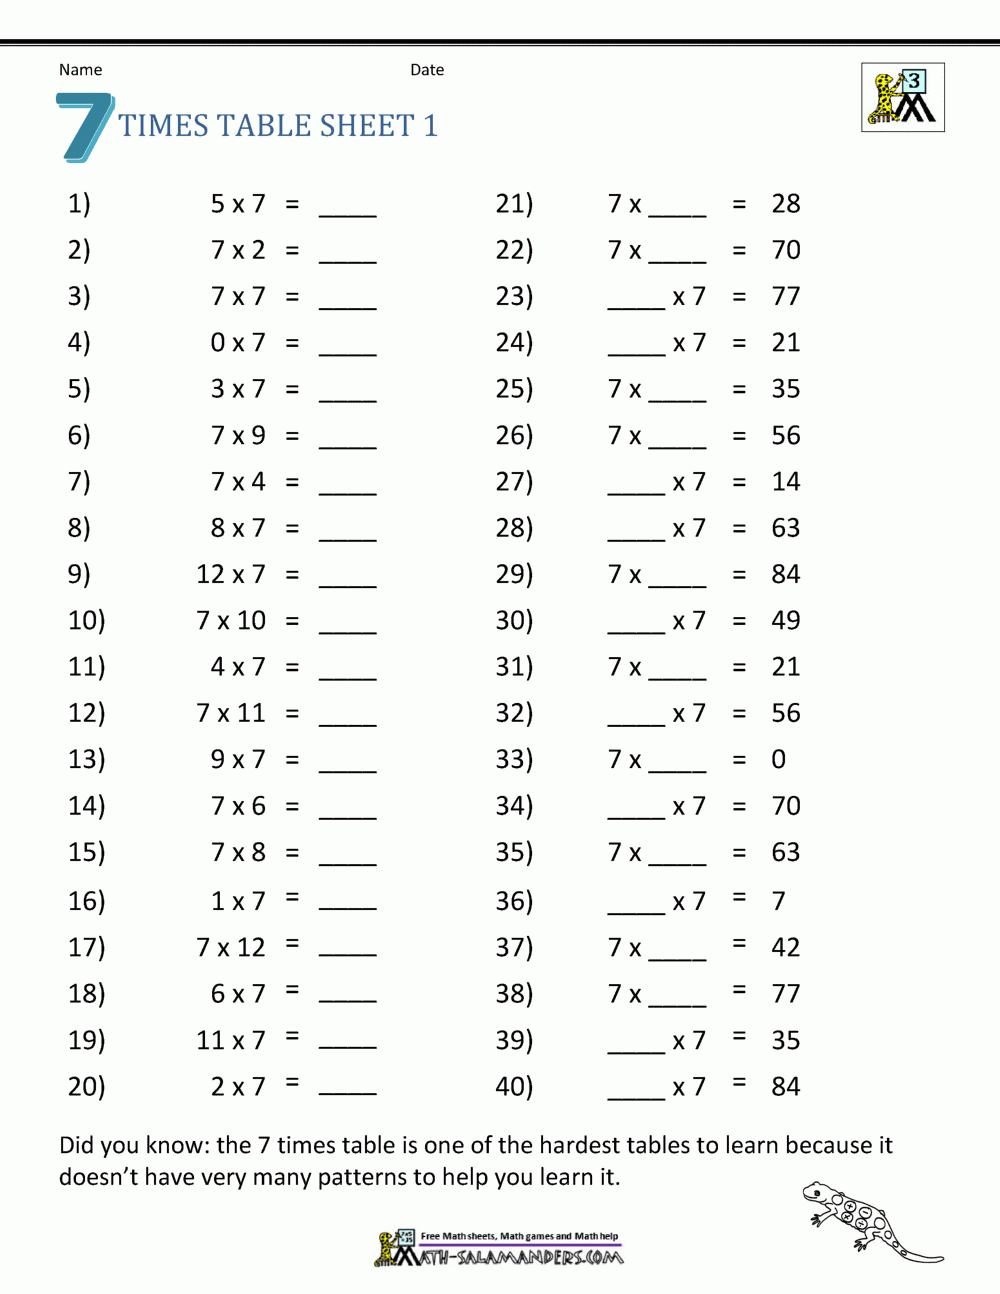 Multiplication Drill Sheets 3Rd Grade pertaining to Free Printable Multiplication Drill Sheets